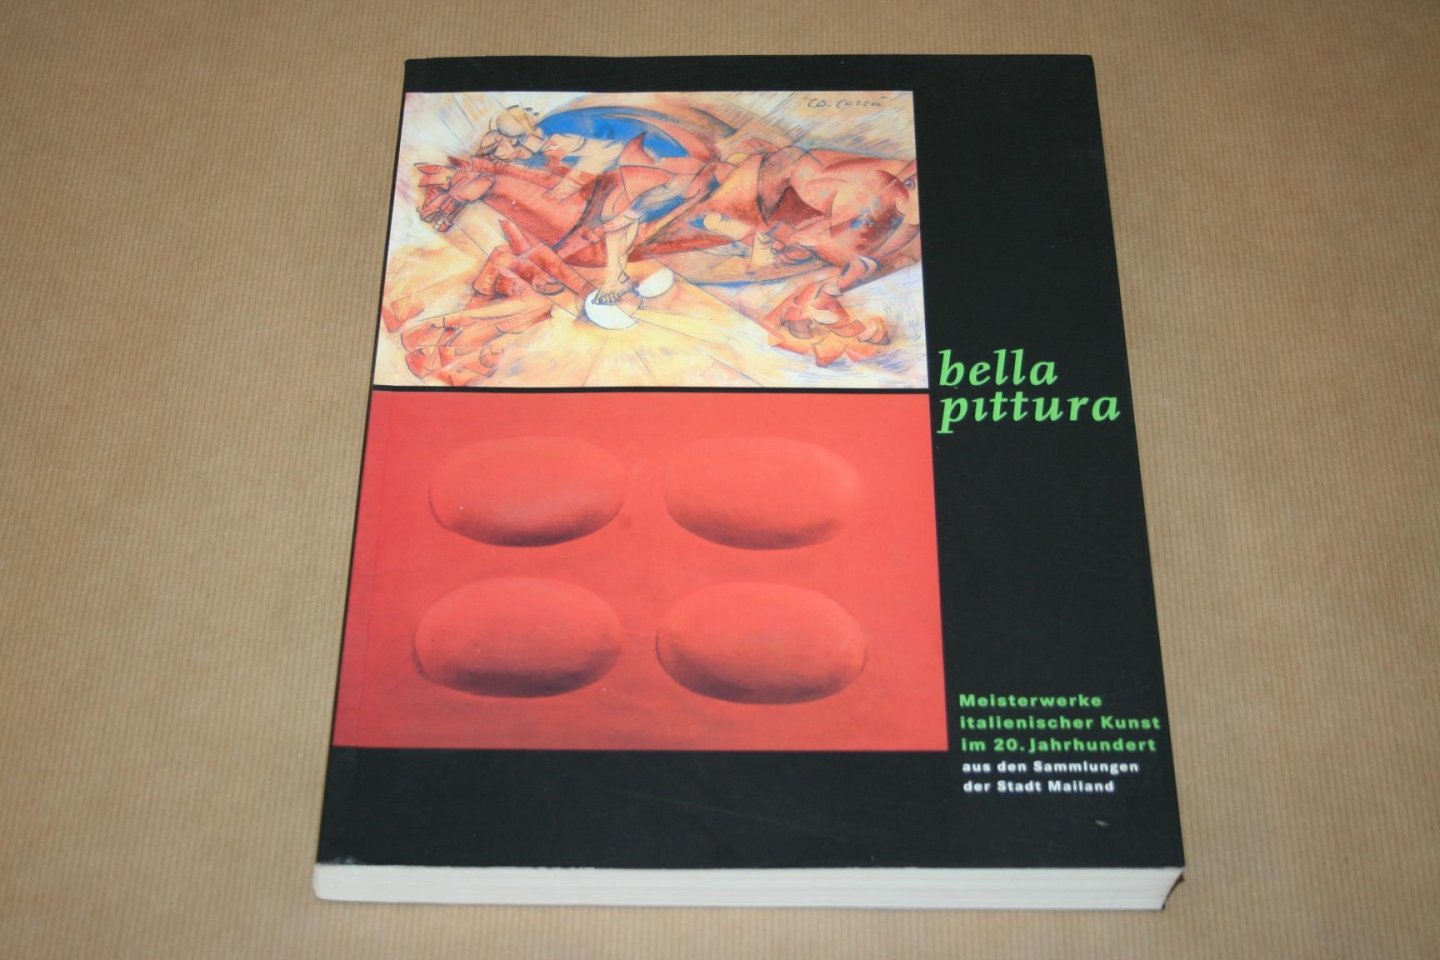  - Bella Pittura -- Meisterwerke italienischer Kunst im 20. Jahrhundert